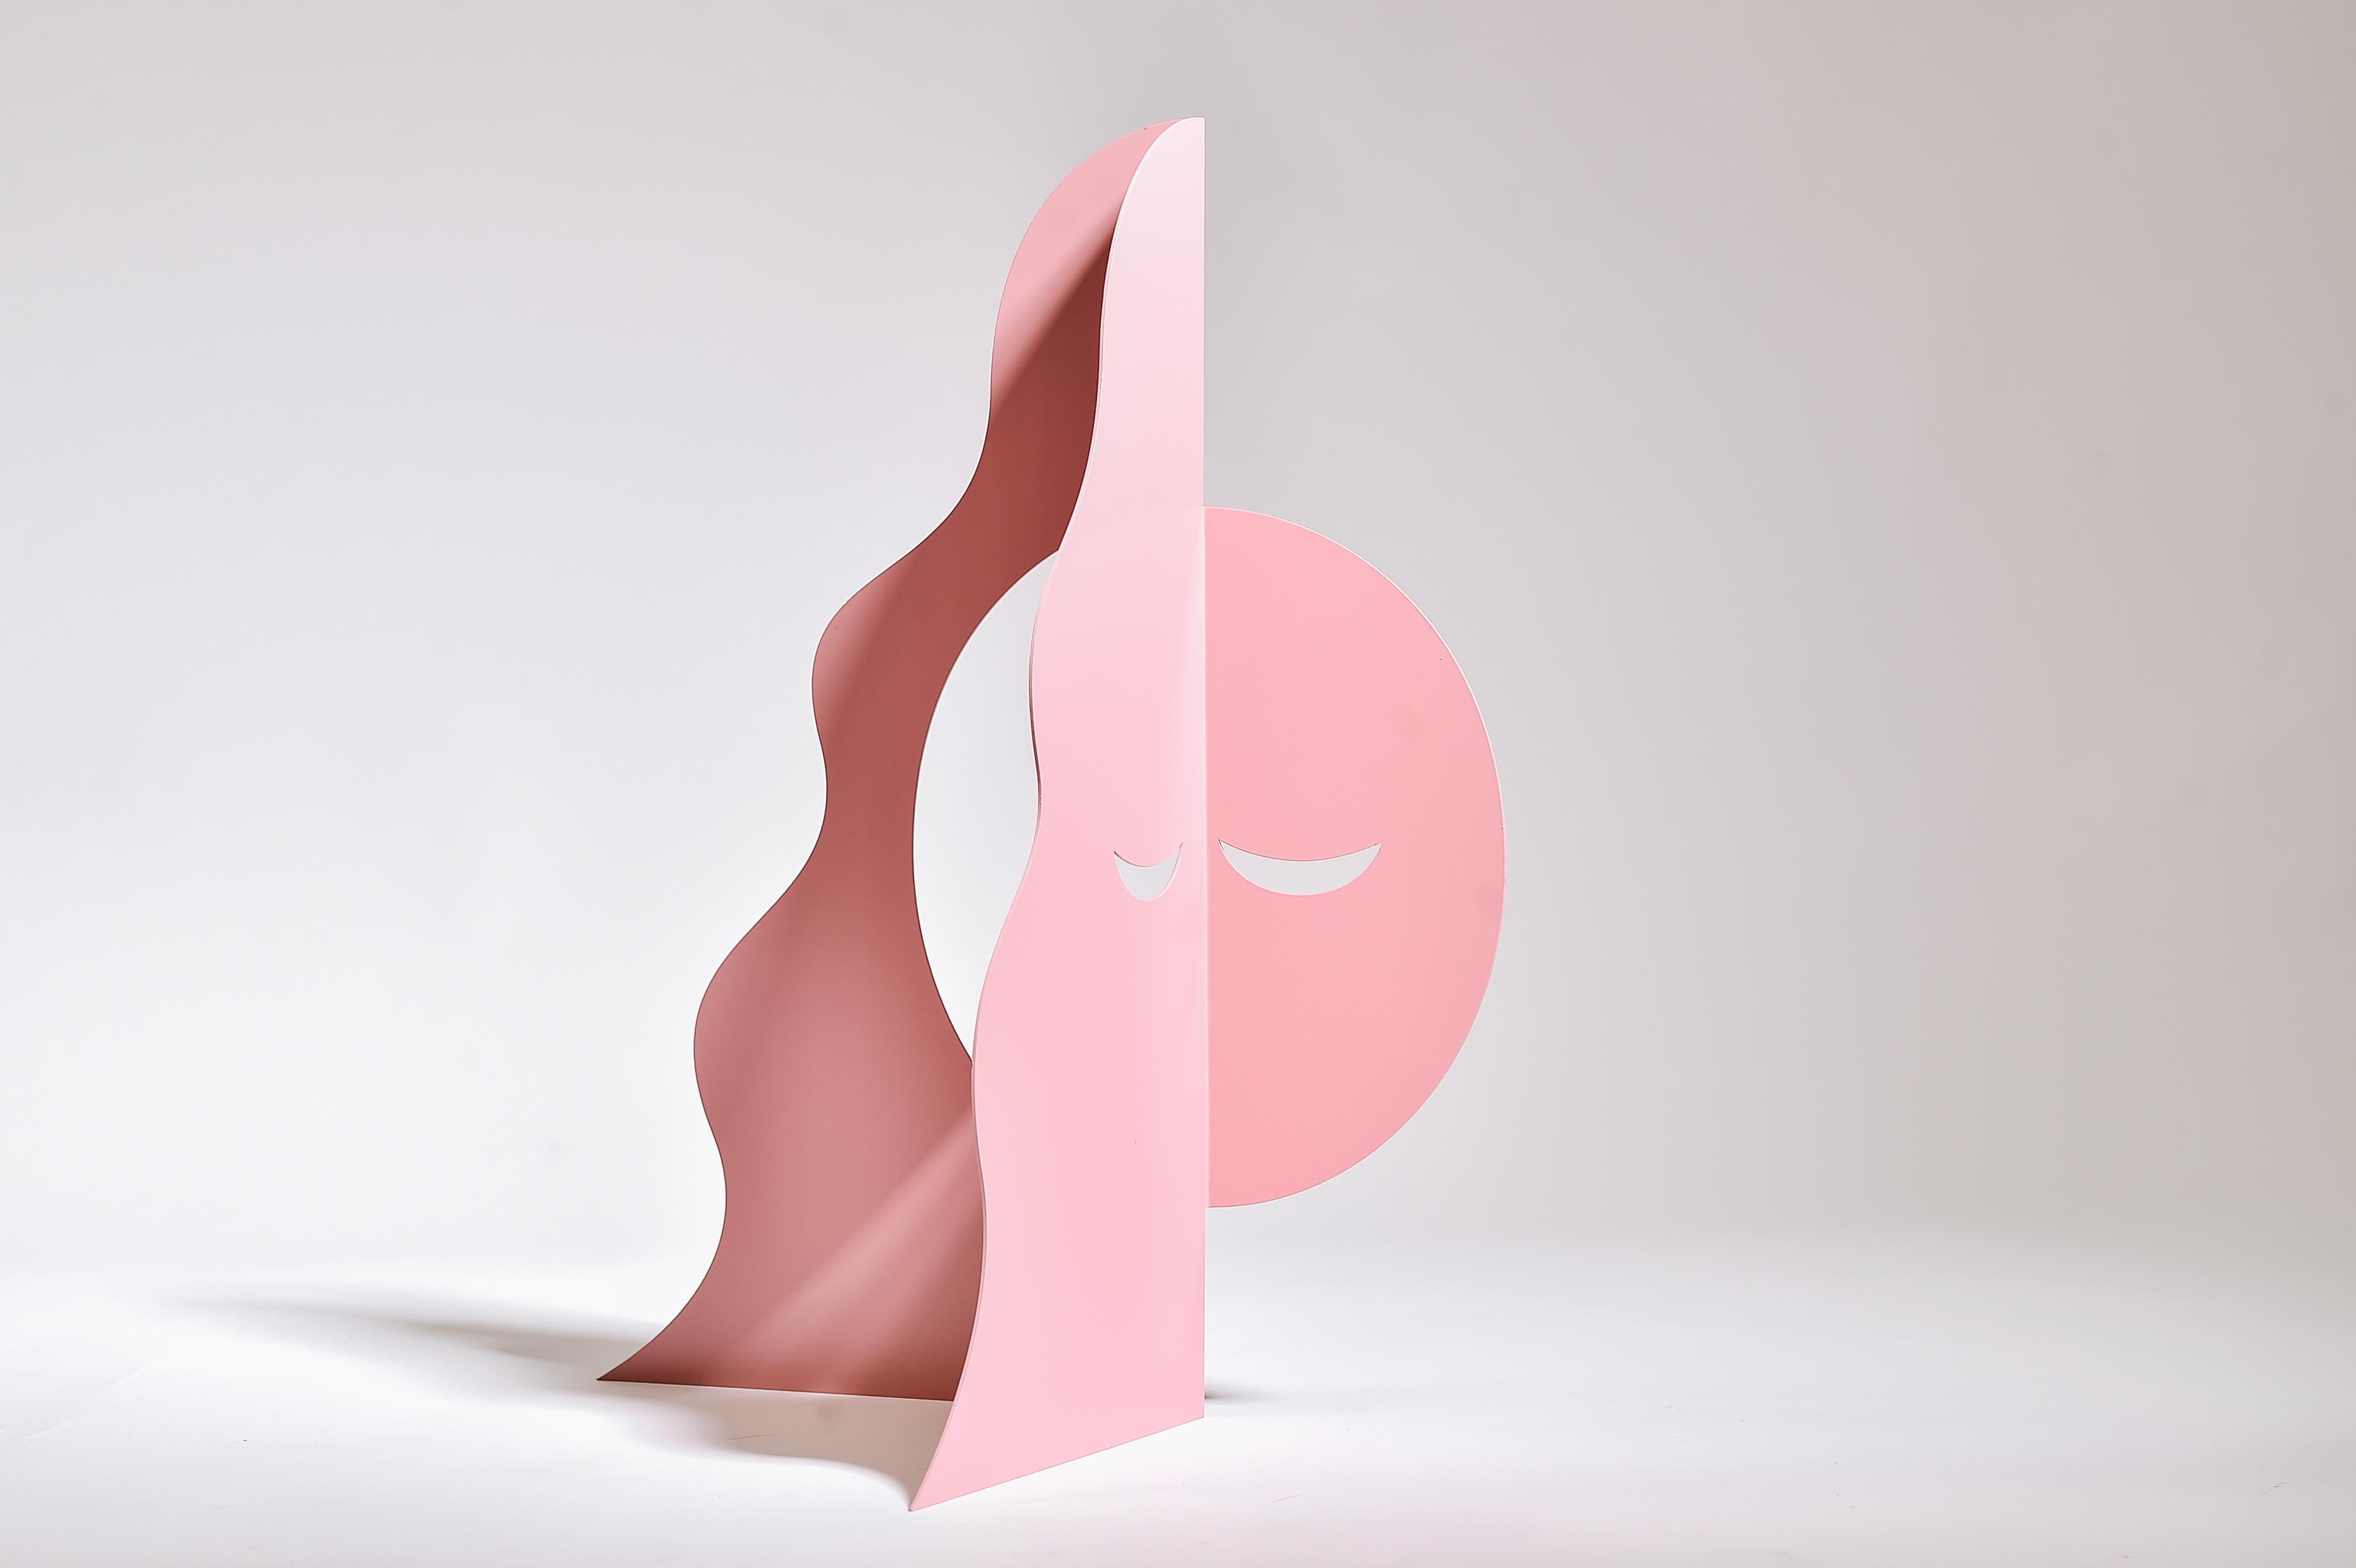 Luna rosa - escultura figurativa abstracta - Figurative Sculpture Gris de Gal Melnick